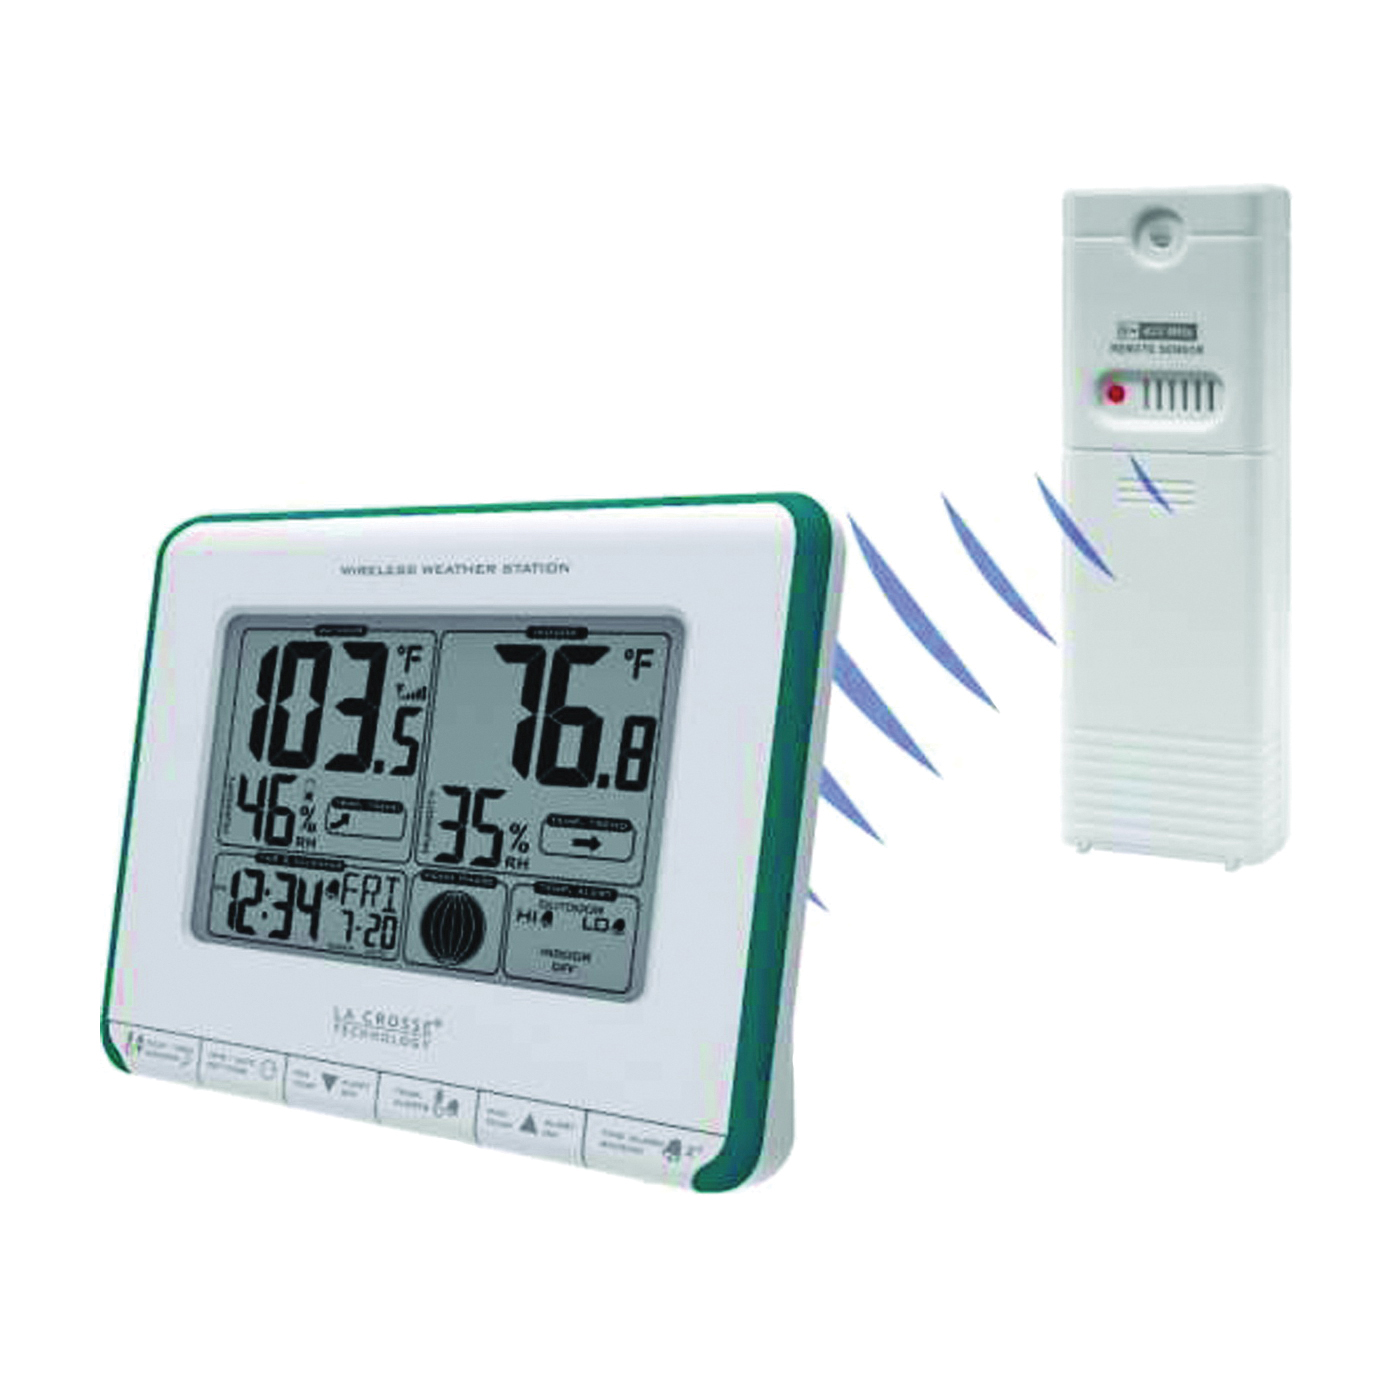 La Crosse Technology 308-179or - Wireless Weather Station